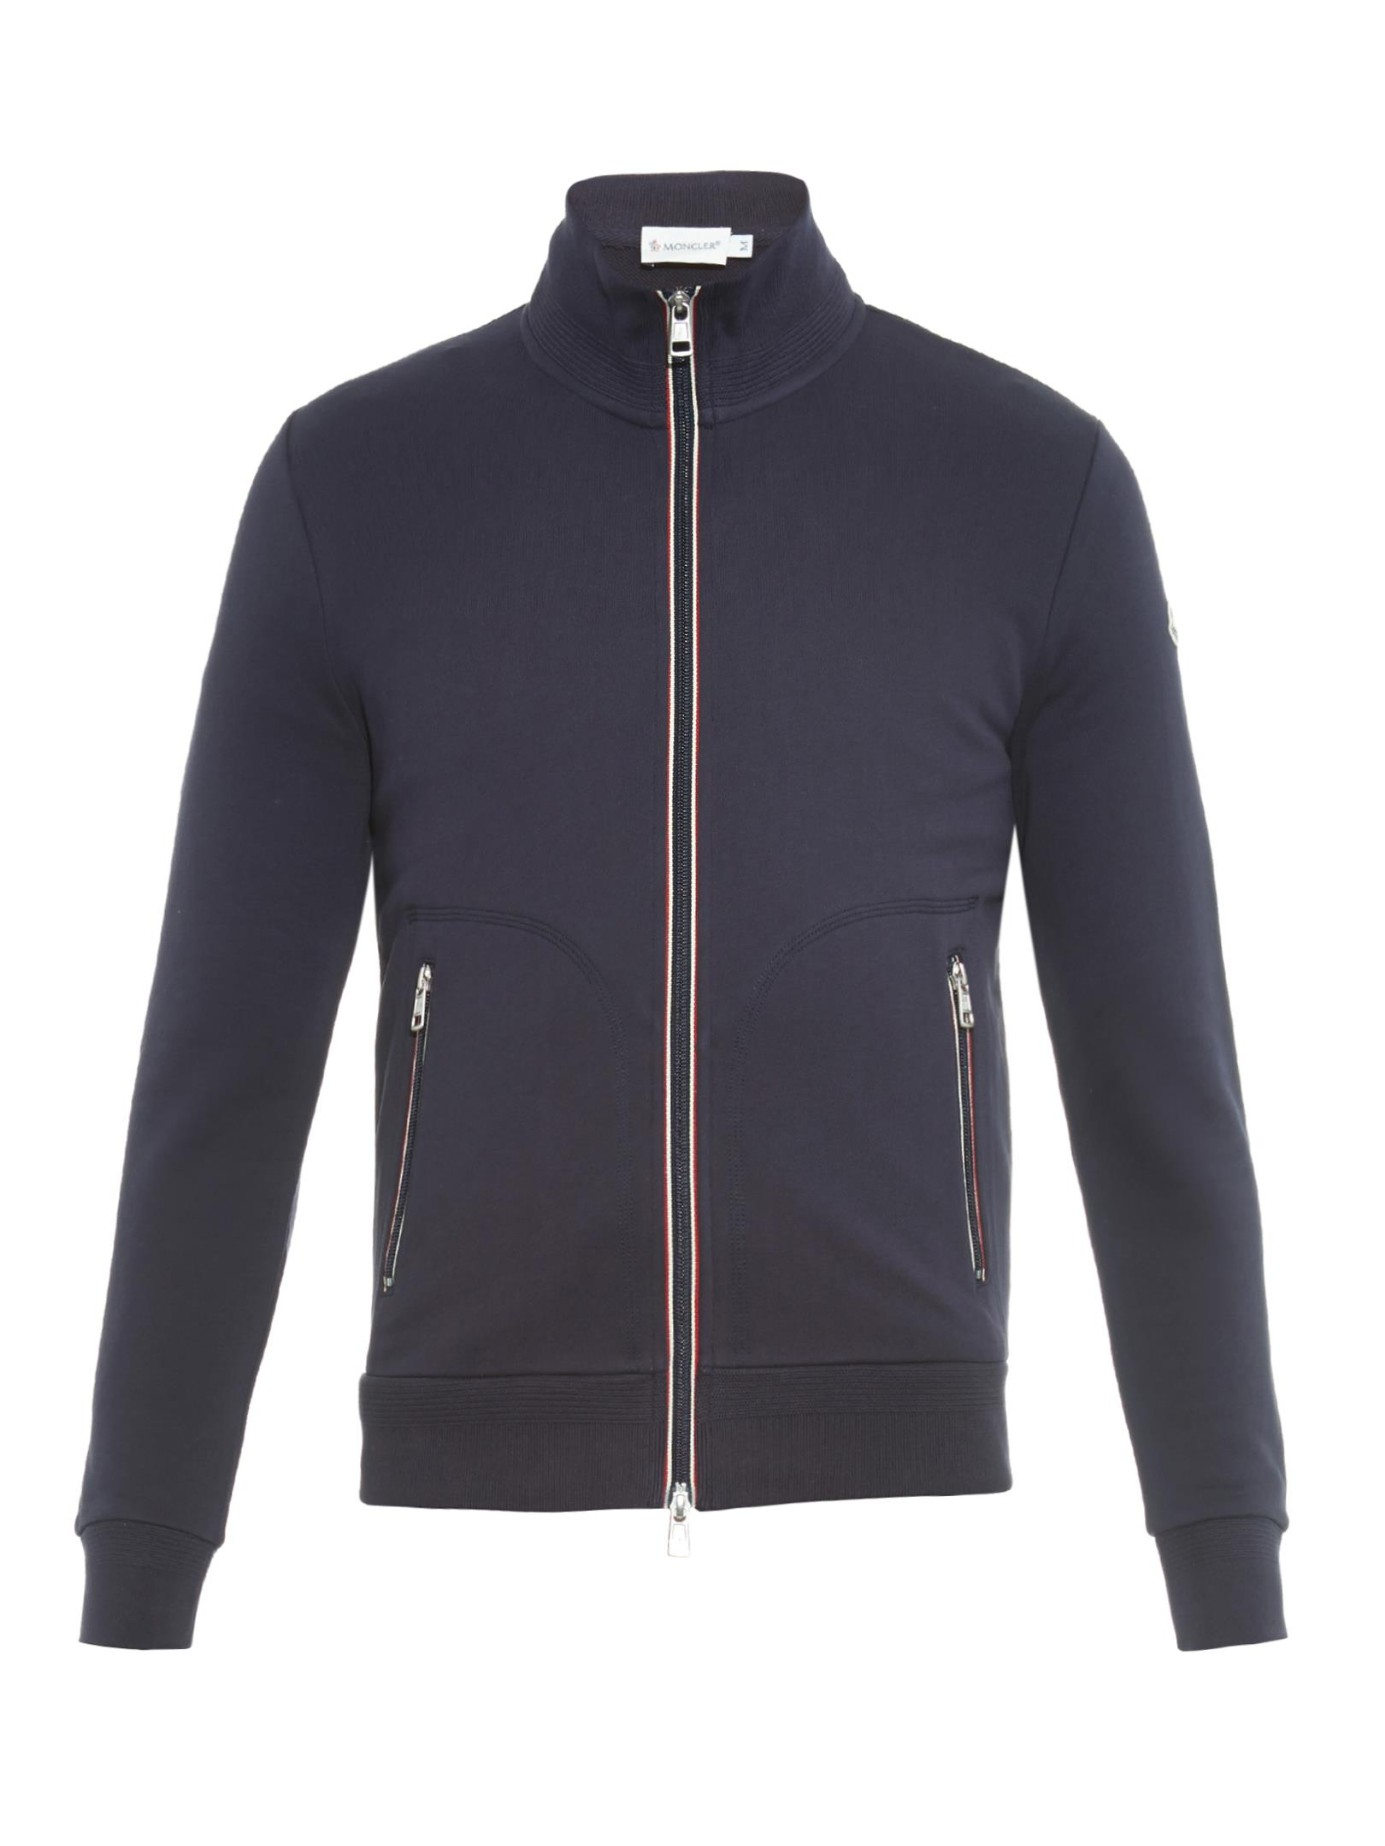 Moncler Zip-up Cotton-jersey Sweatshirt in Navy (Blue) for Men - Lyst